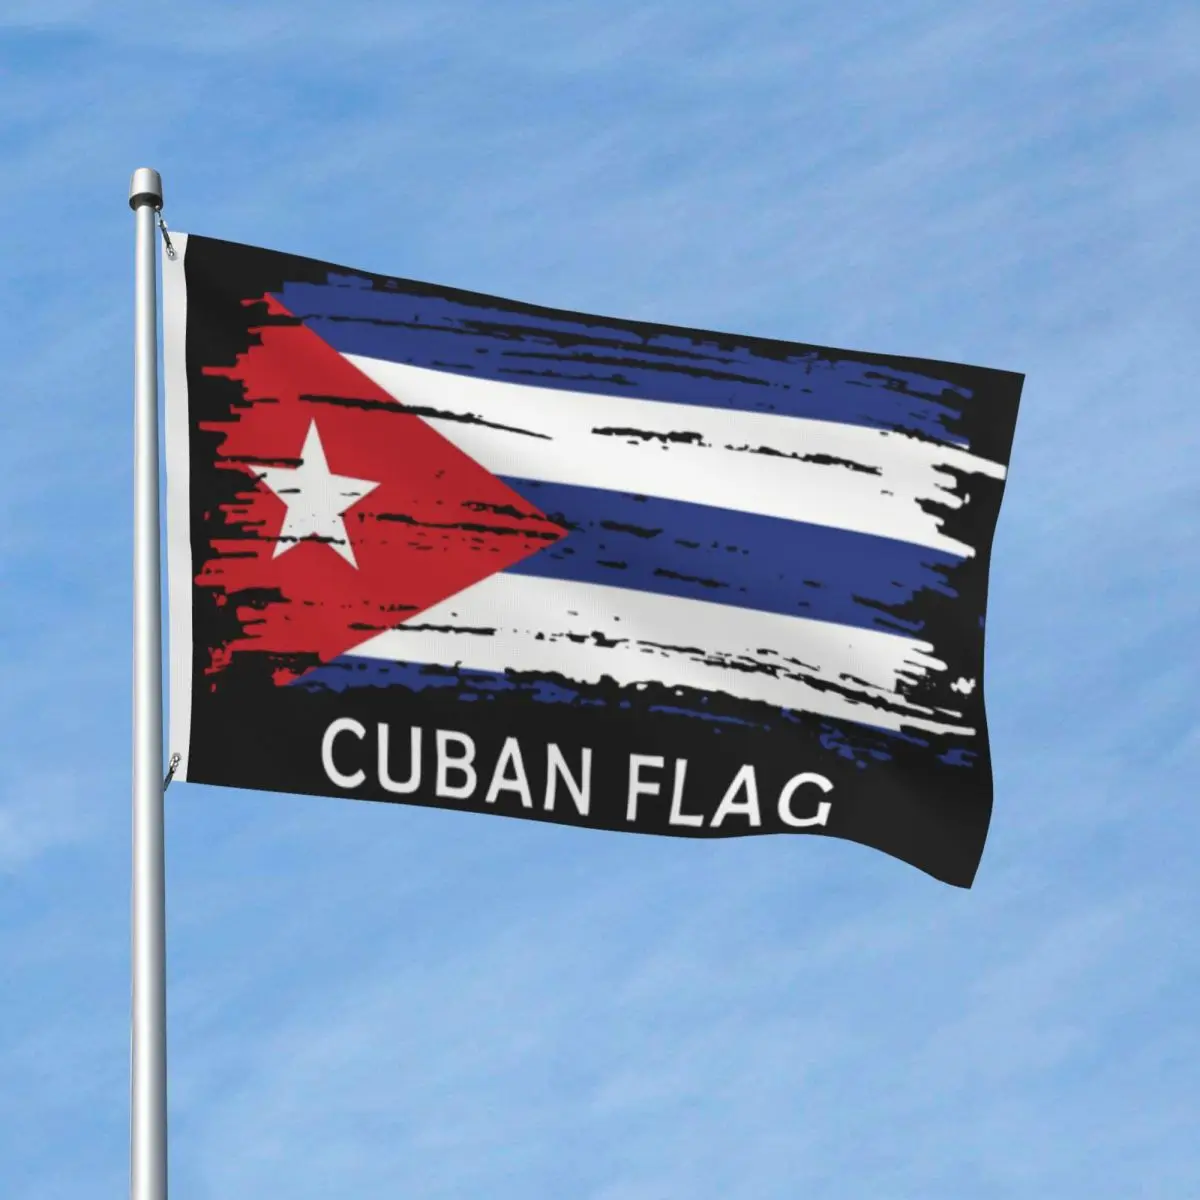 

Флаг кубинской валюты, винтажная драпировка ярких цветов в помещении